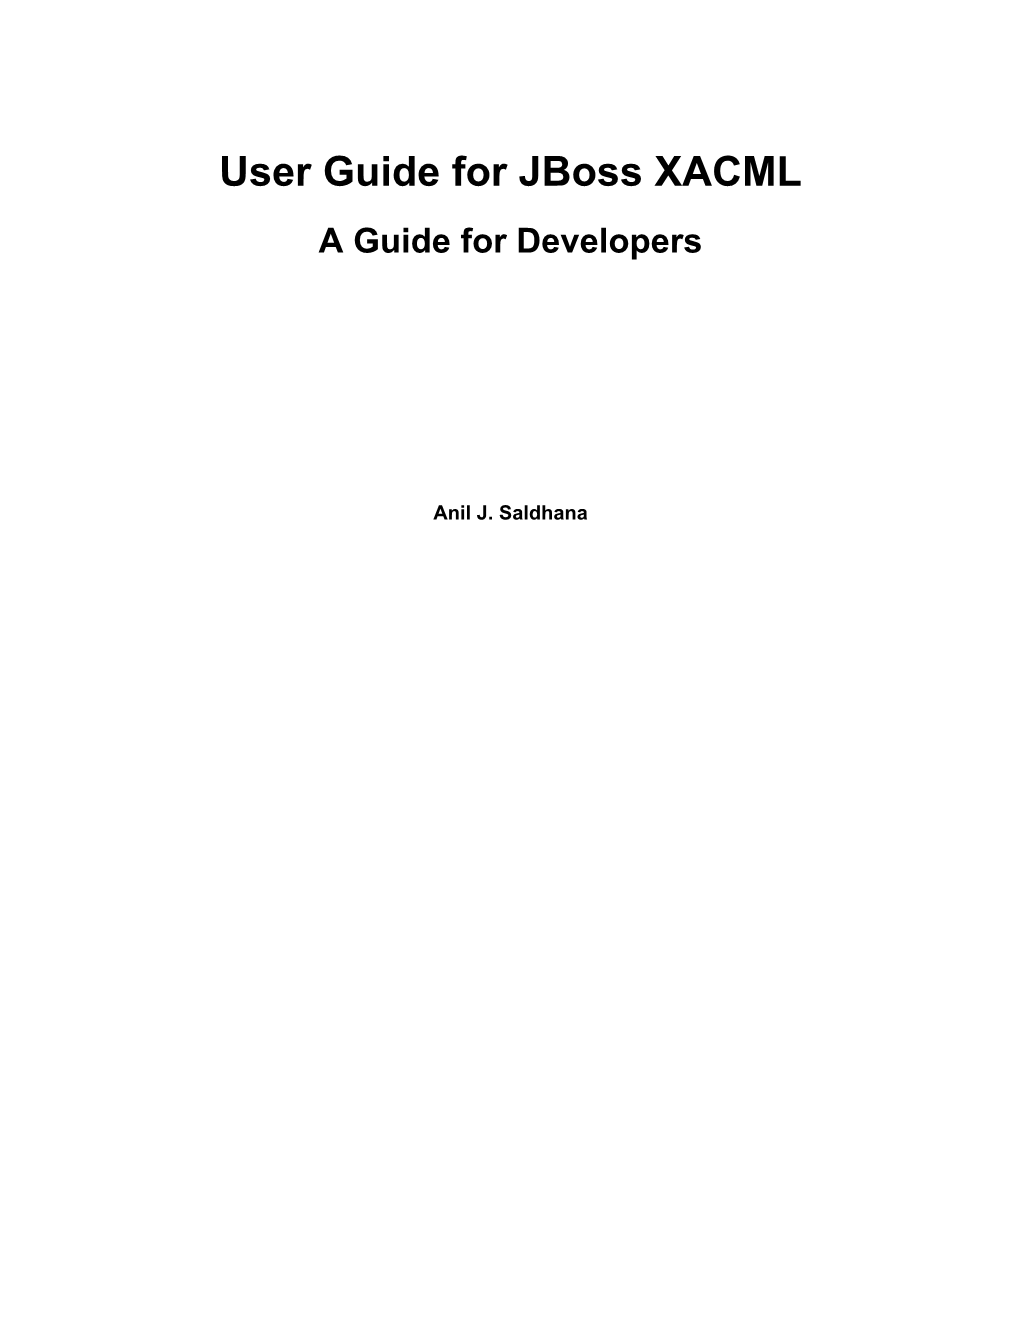 User Guide for Jboss XACML a Guide for Developers